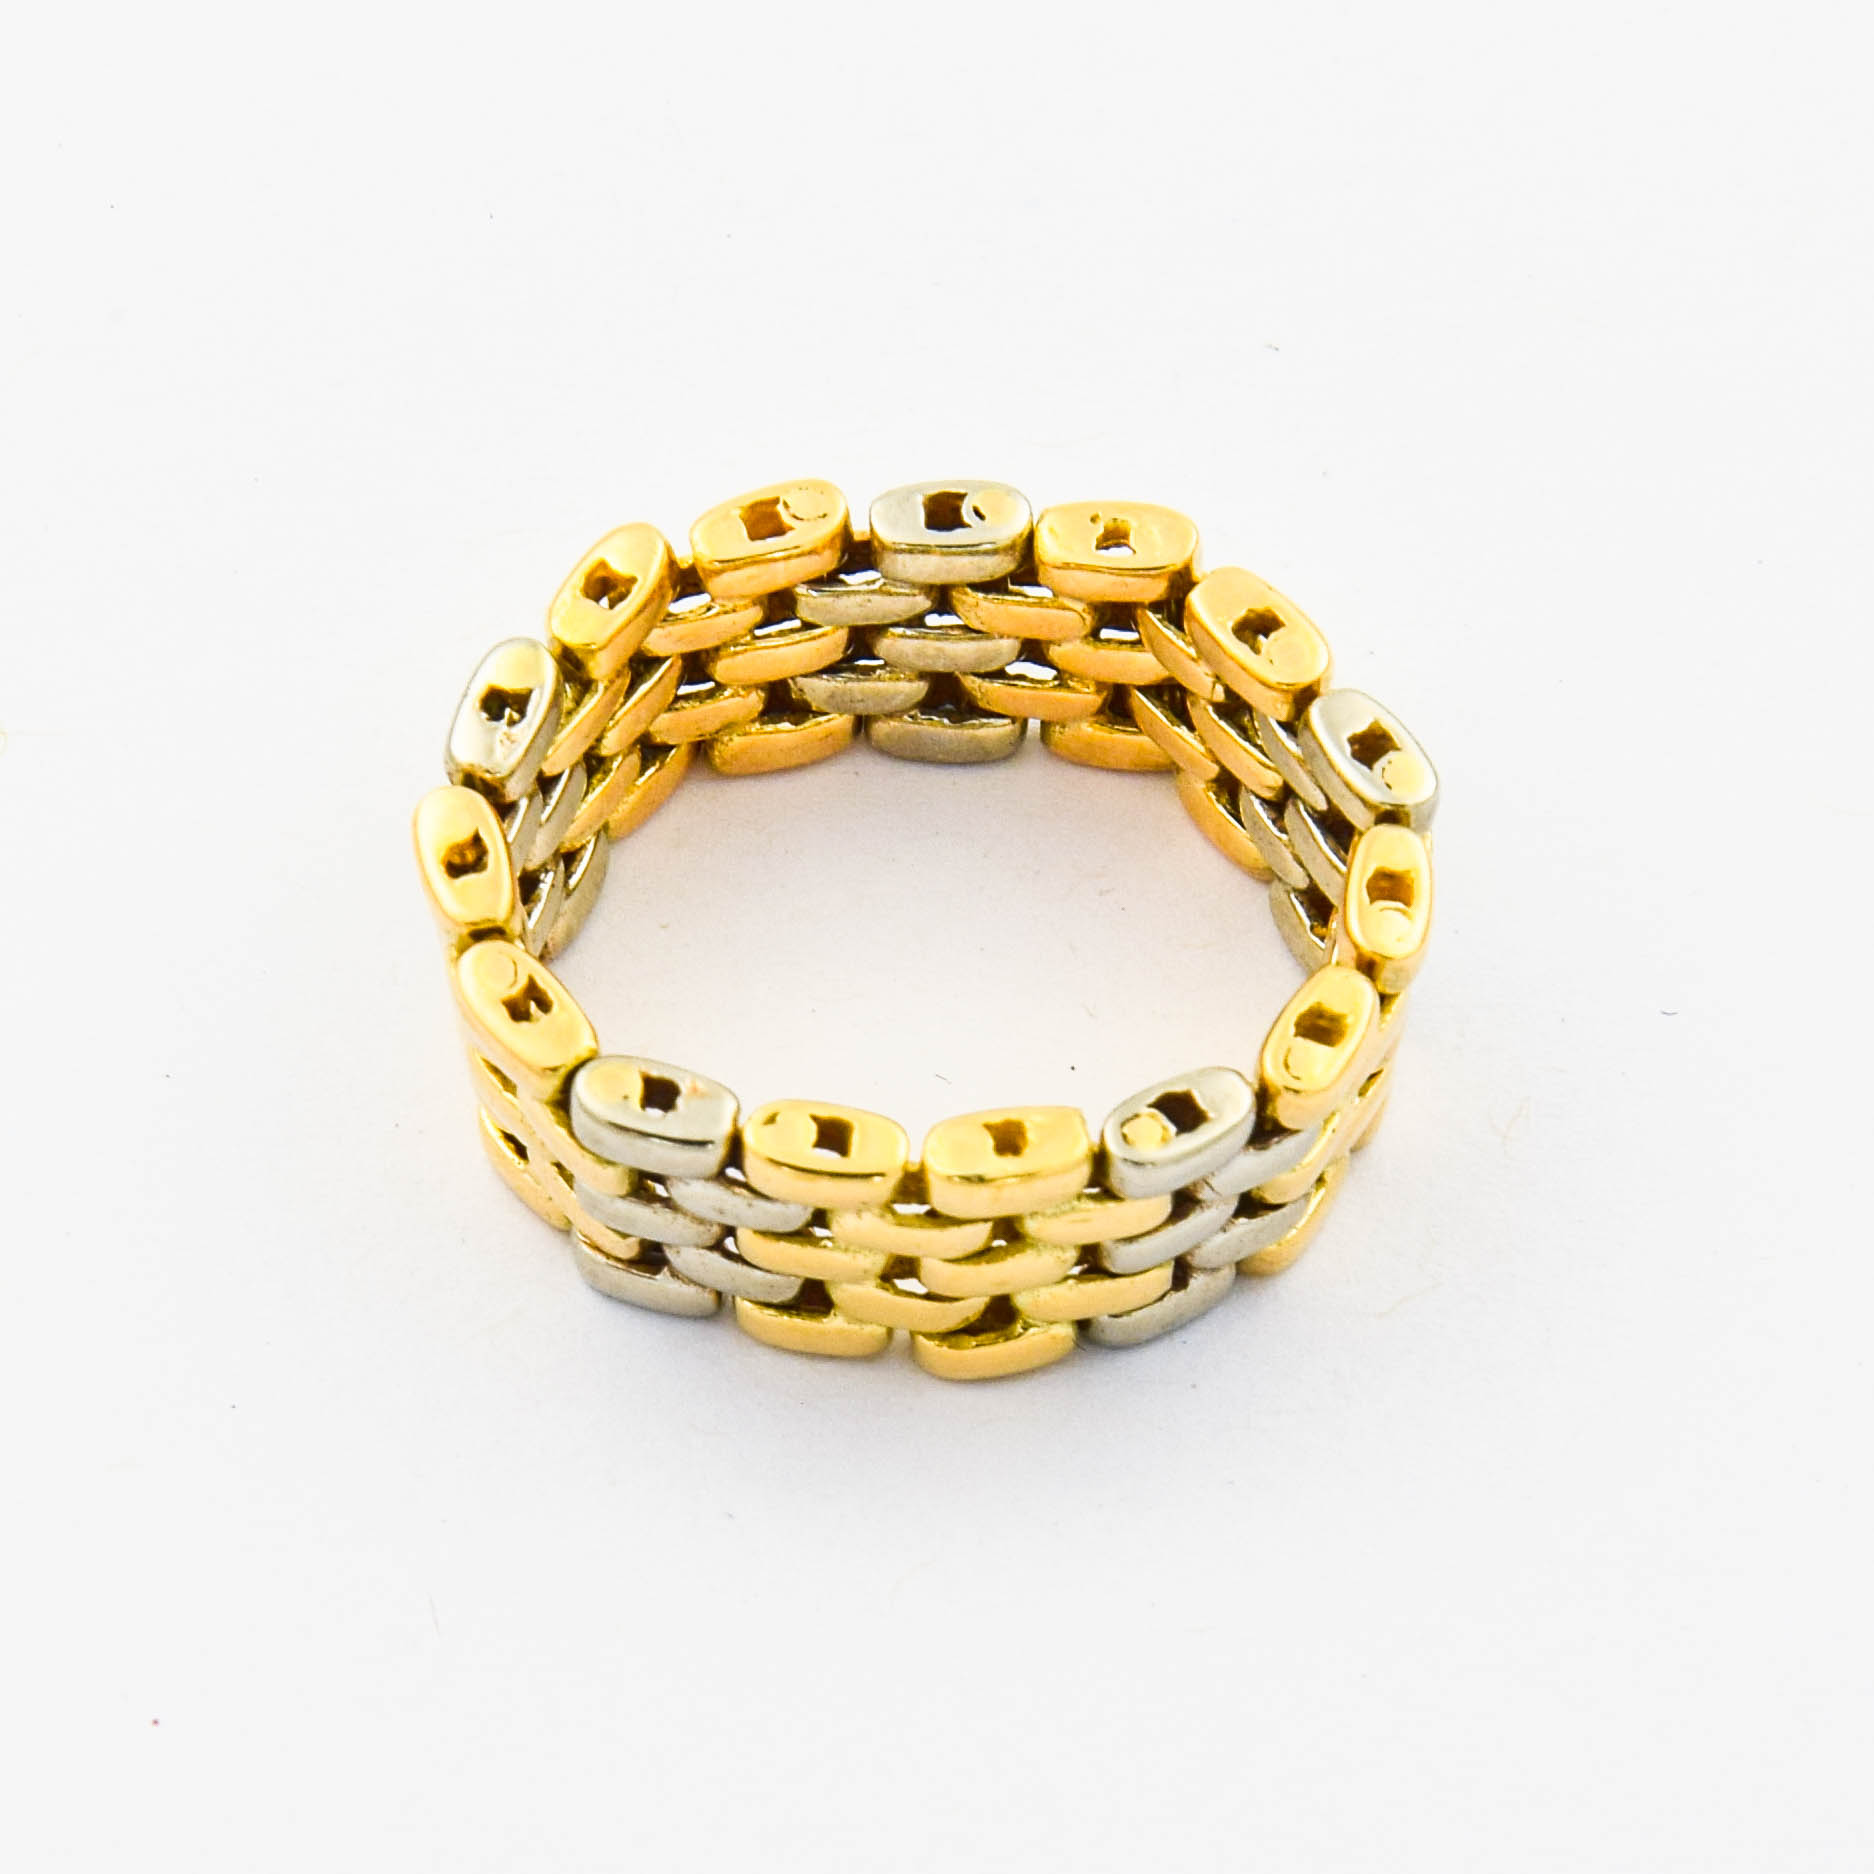 Ring aus 585 Gelb- und Weißgold, nachhaltiger second hand Schmuck perfekt aufgearbeitet